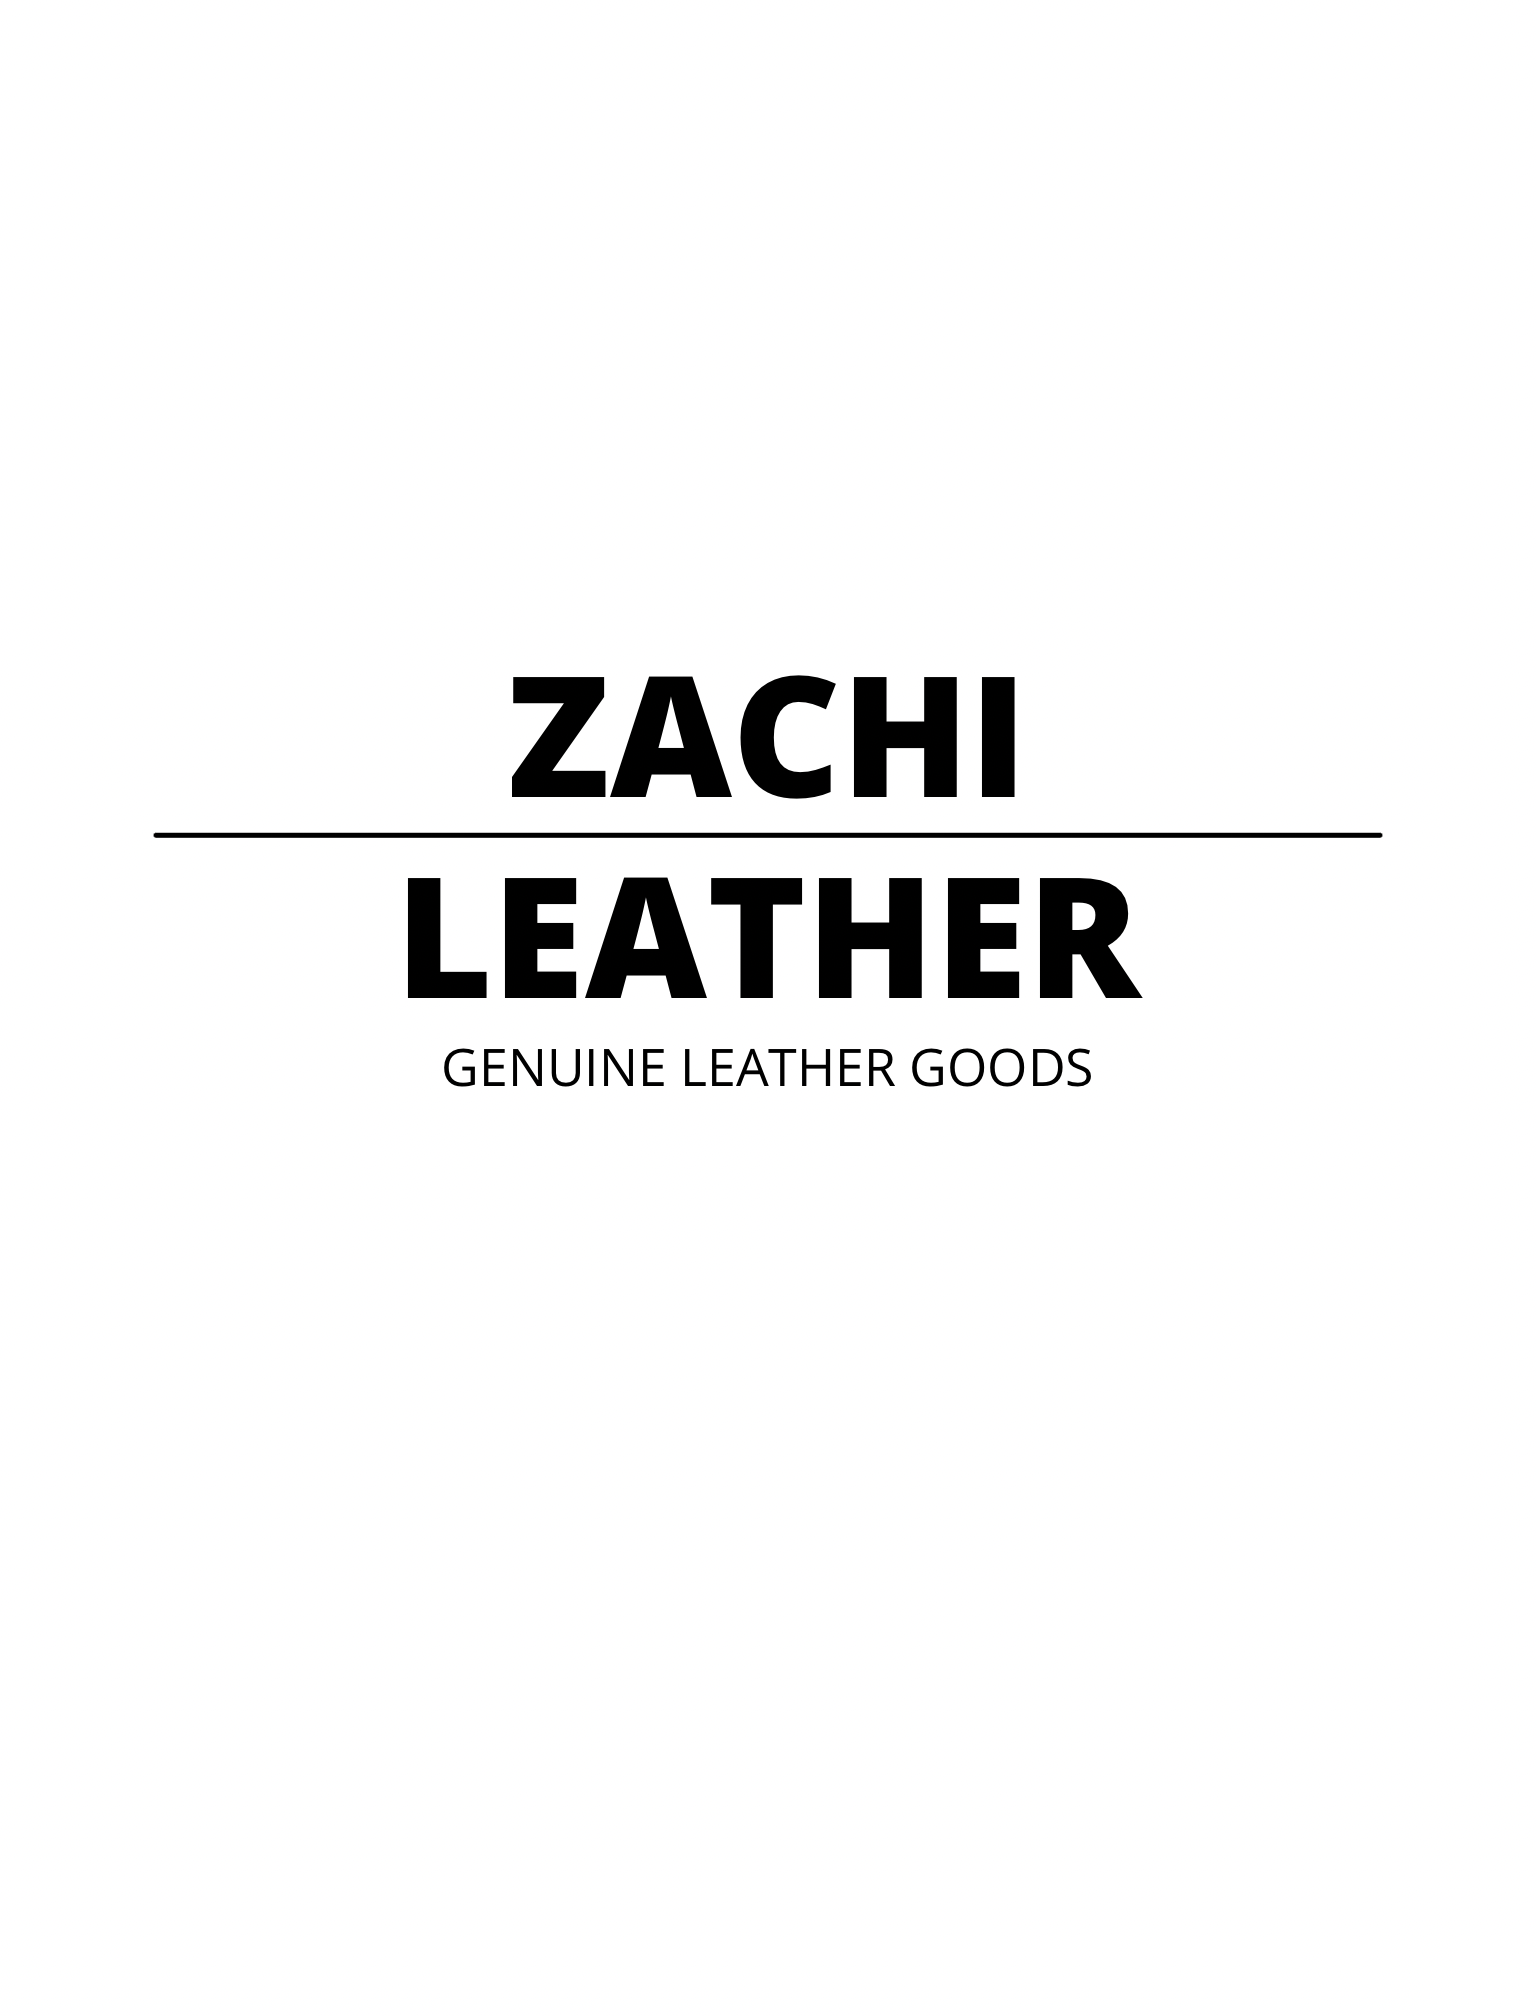 Zachi Leather